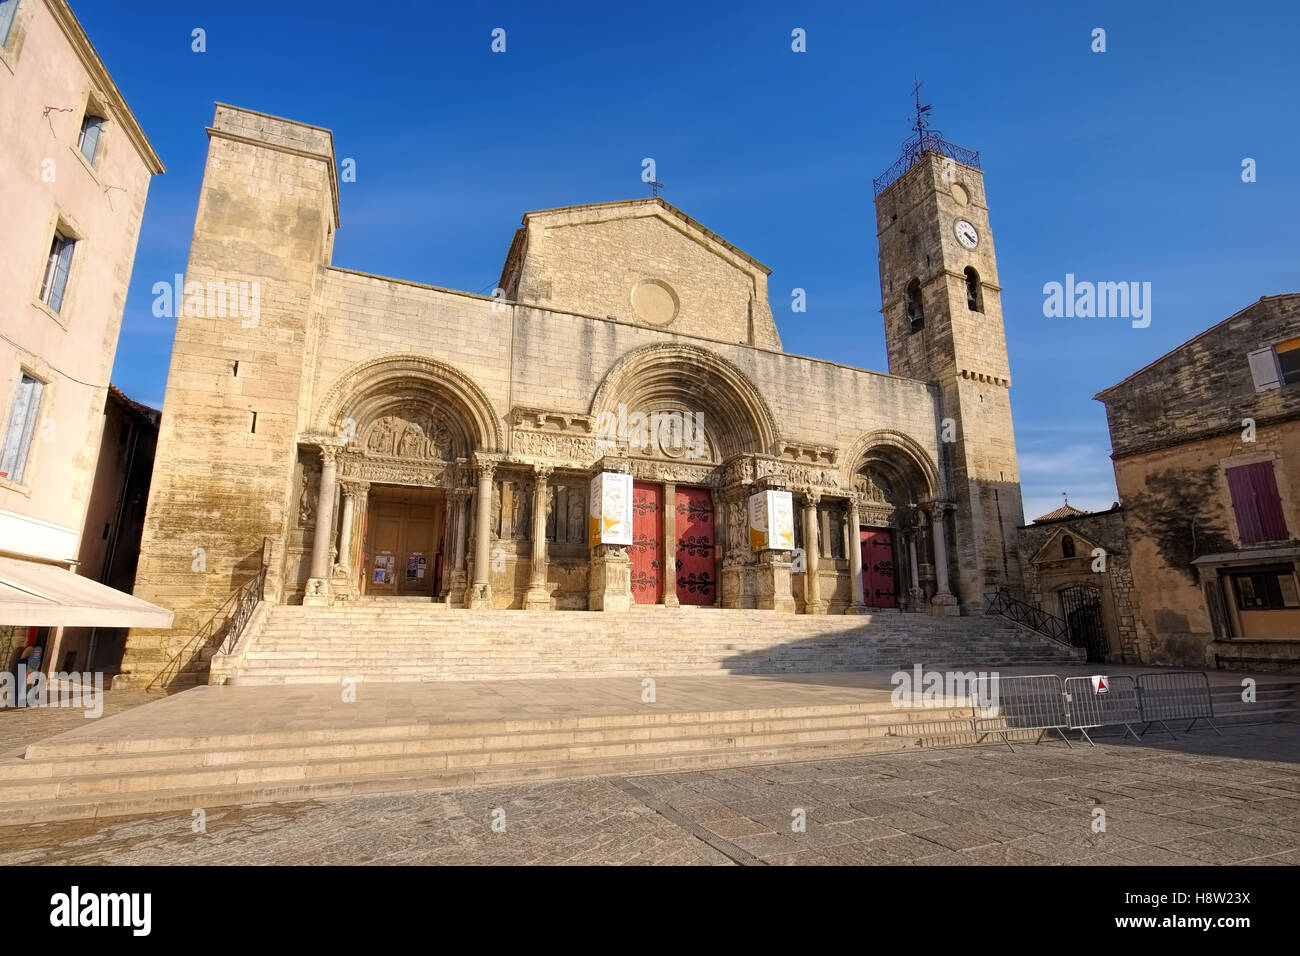 Saint-Gilles, Abteikirche Provence - Abbaye de Saint-Gilles, Provence en France Banque D'Images